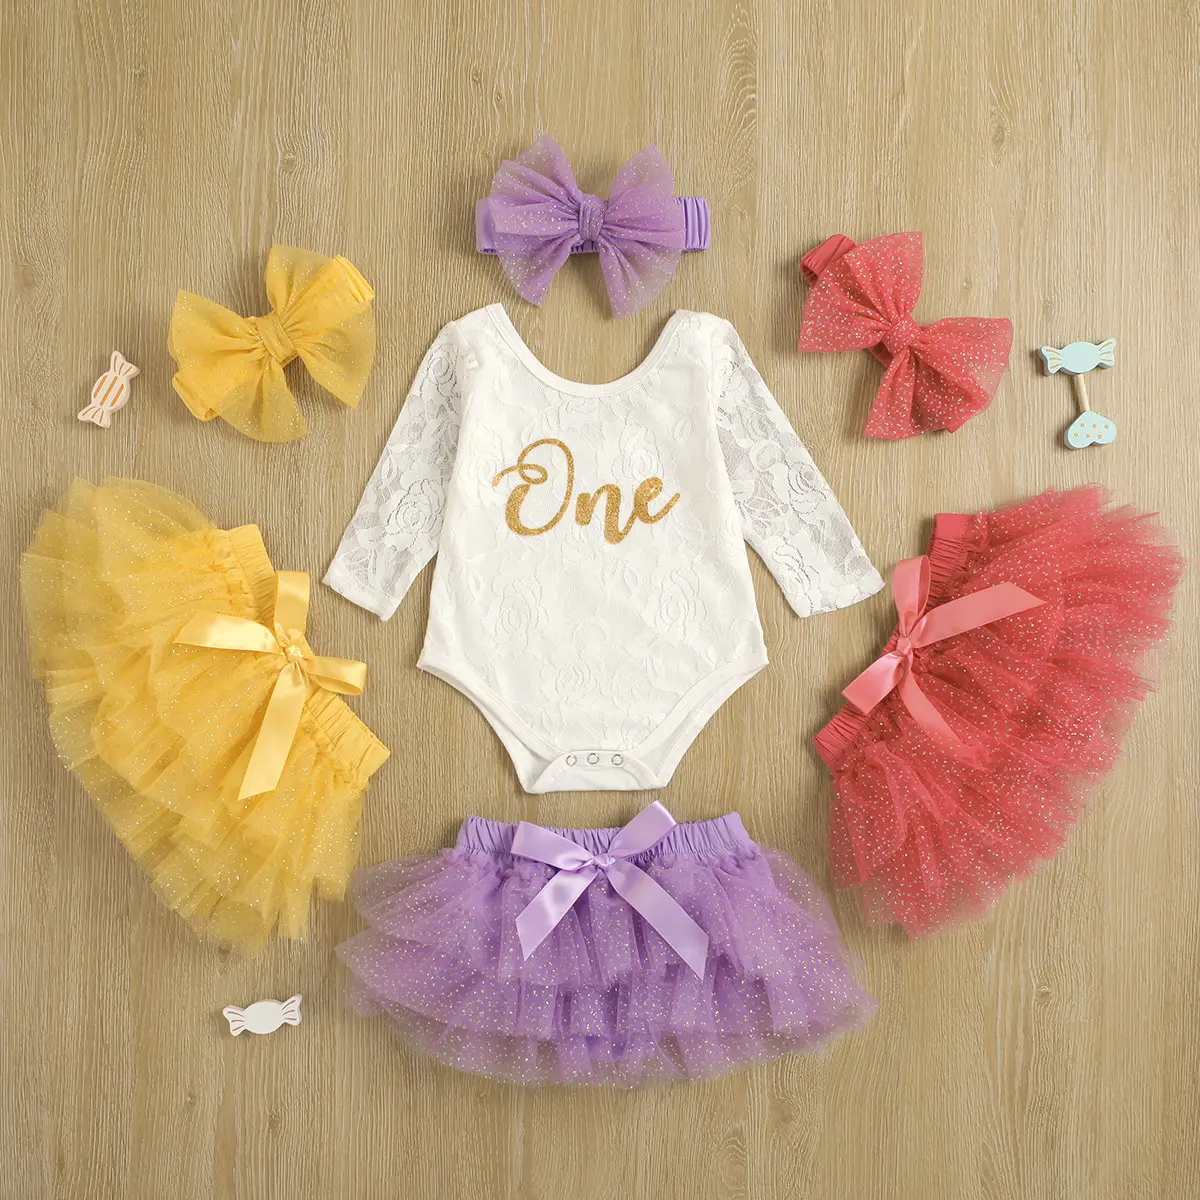 귀여운 아기 의류 소녀 첫 번째 생일 의상 긴 소매 꽃 레이스 Romper 투투 스커트 머리띠 아기 세트